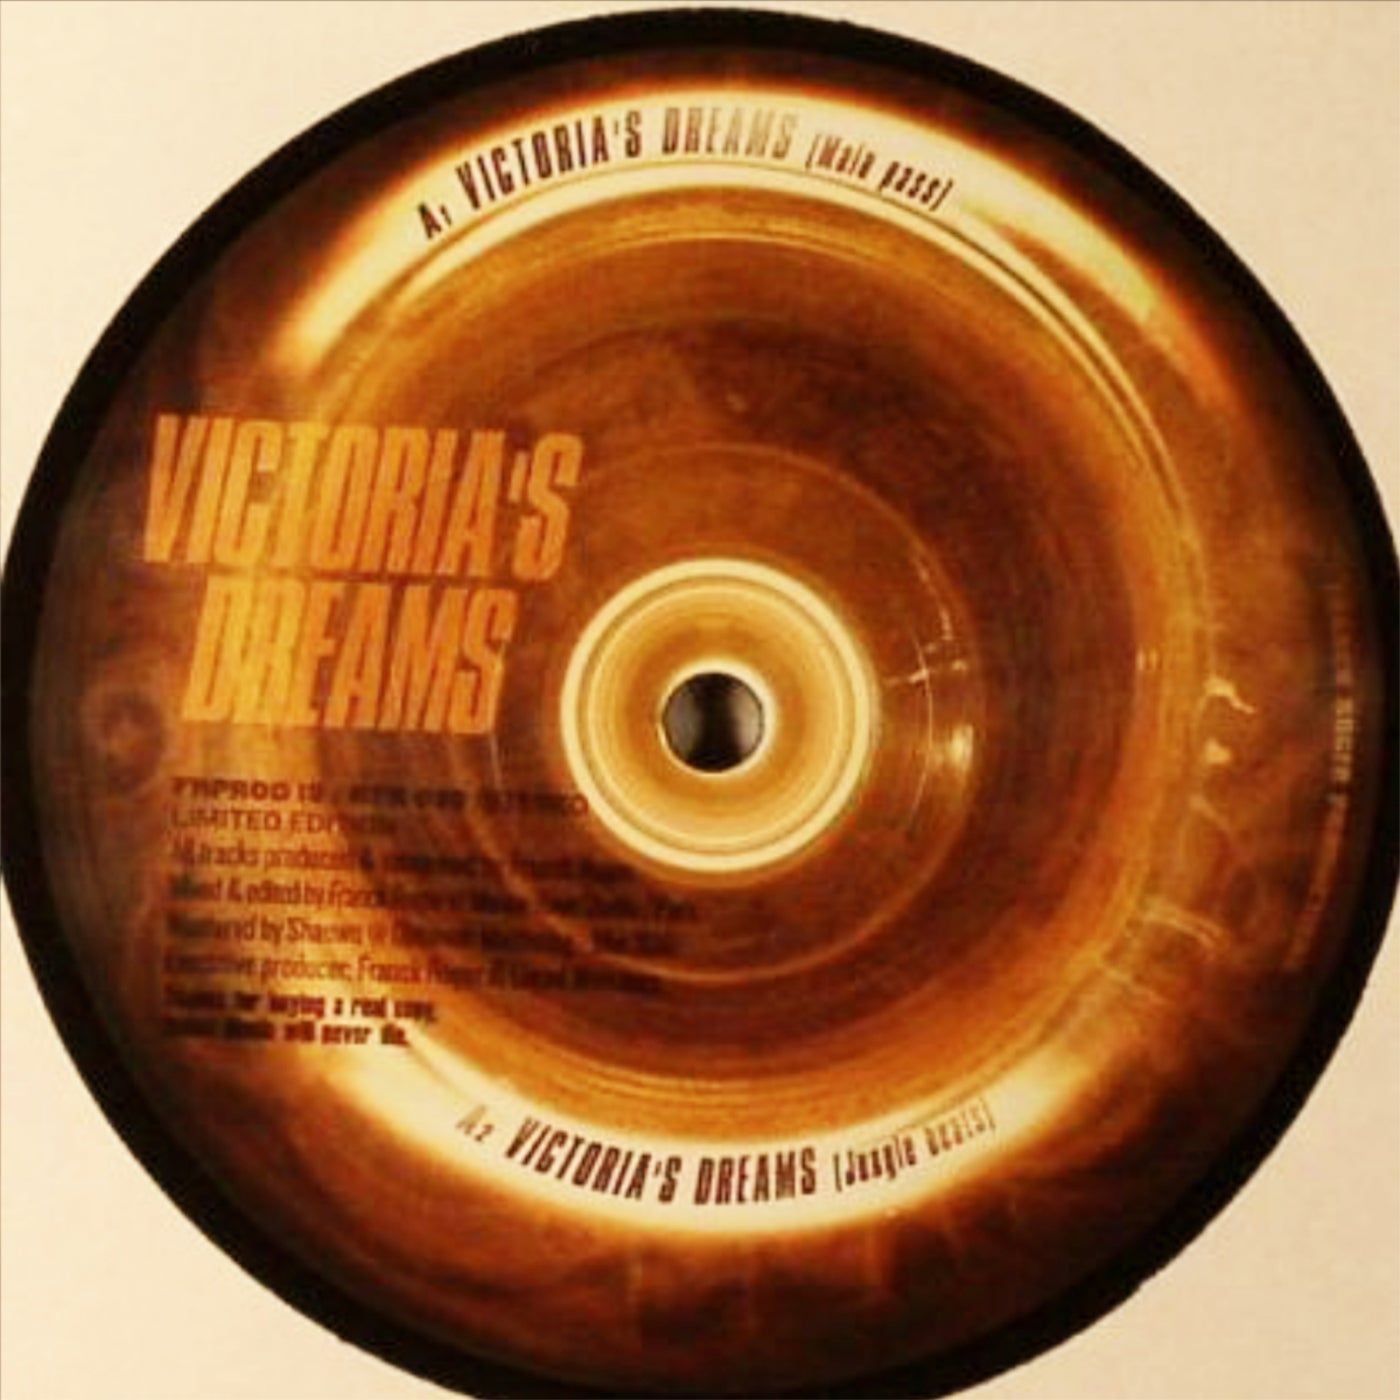 Victoria's Dreams EP